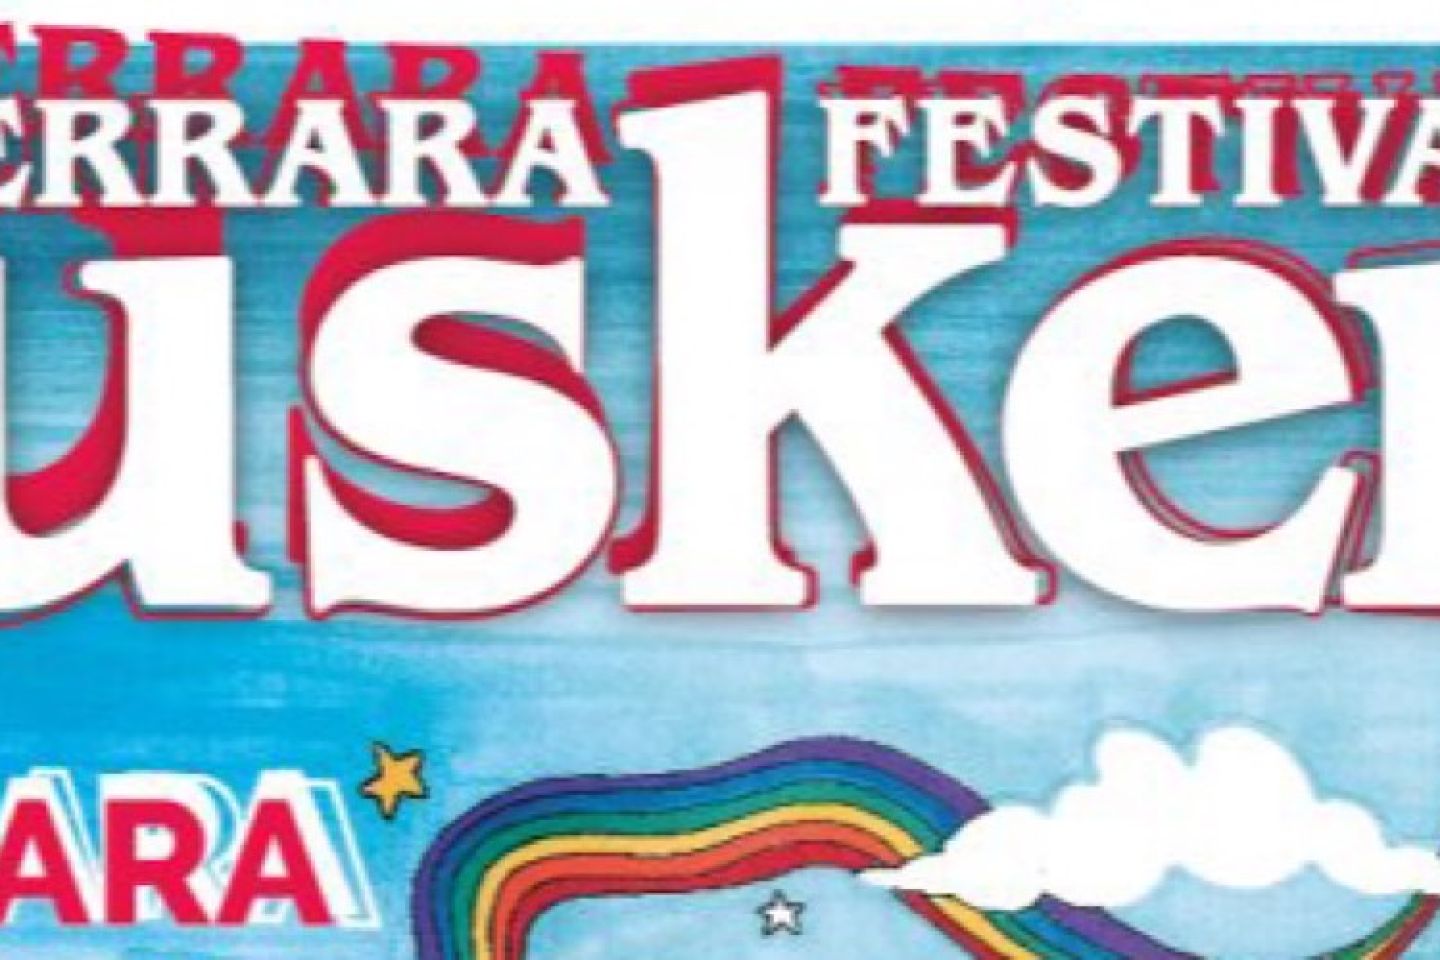 FERRARA BUSKERS FESTIVAL 35MA EDIZIONE 23 / 28 AGOSTO 2022